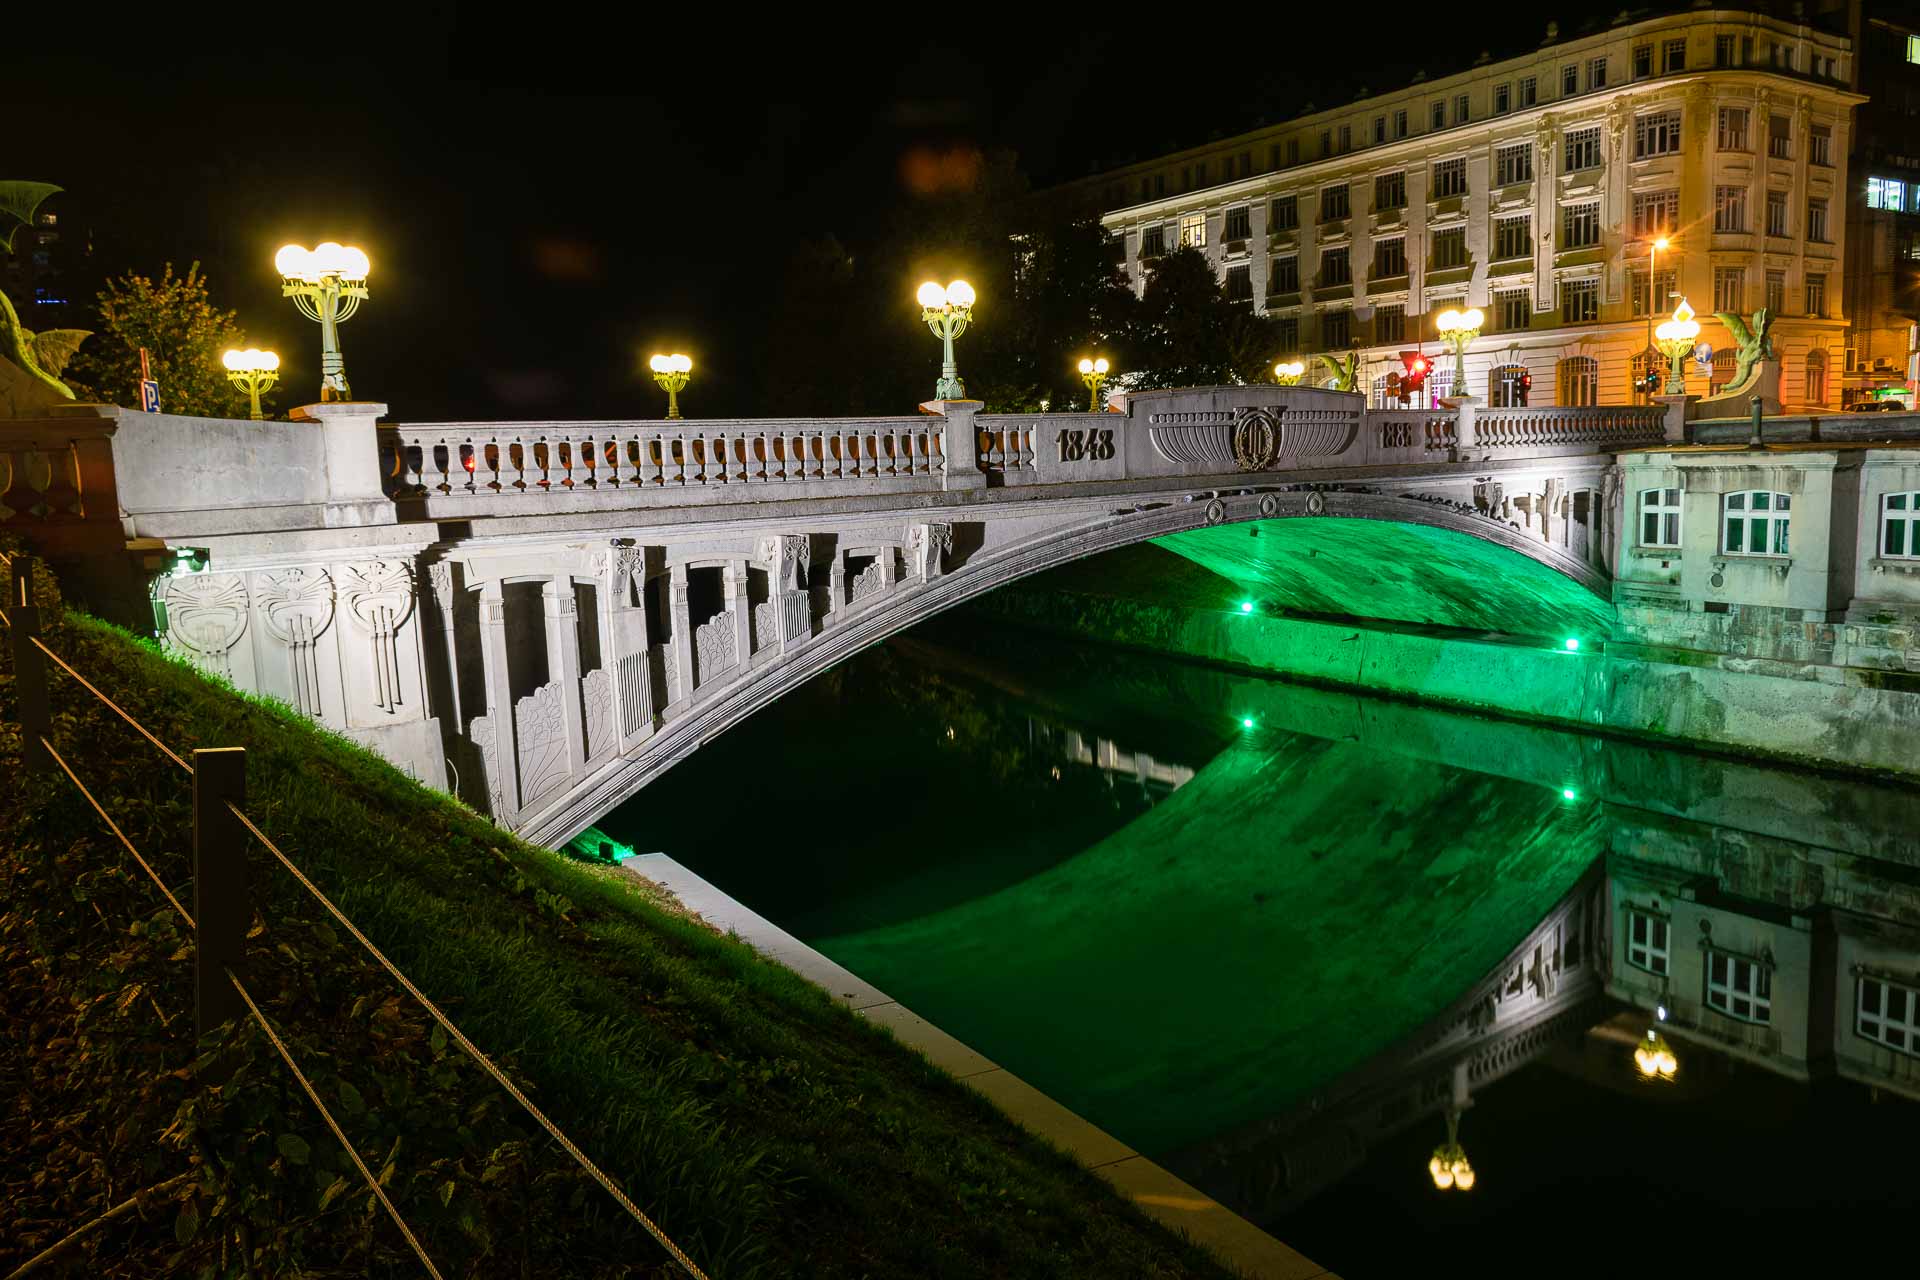 Uma ponte da cidade de Liubliana com uma iluminação verde embaixo